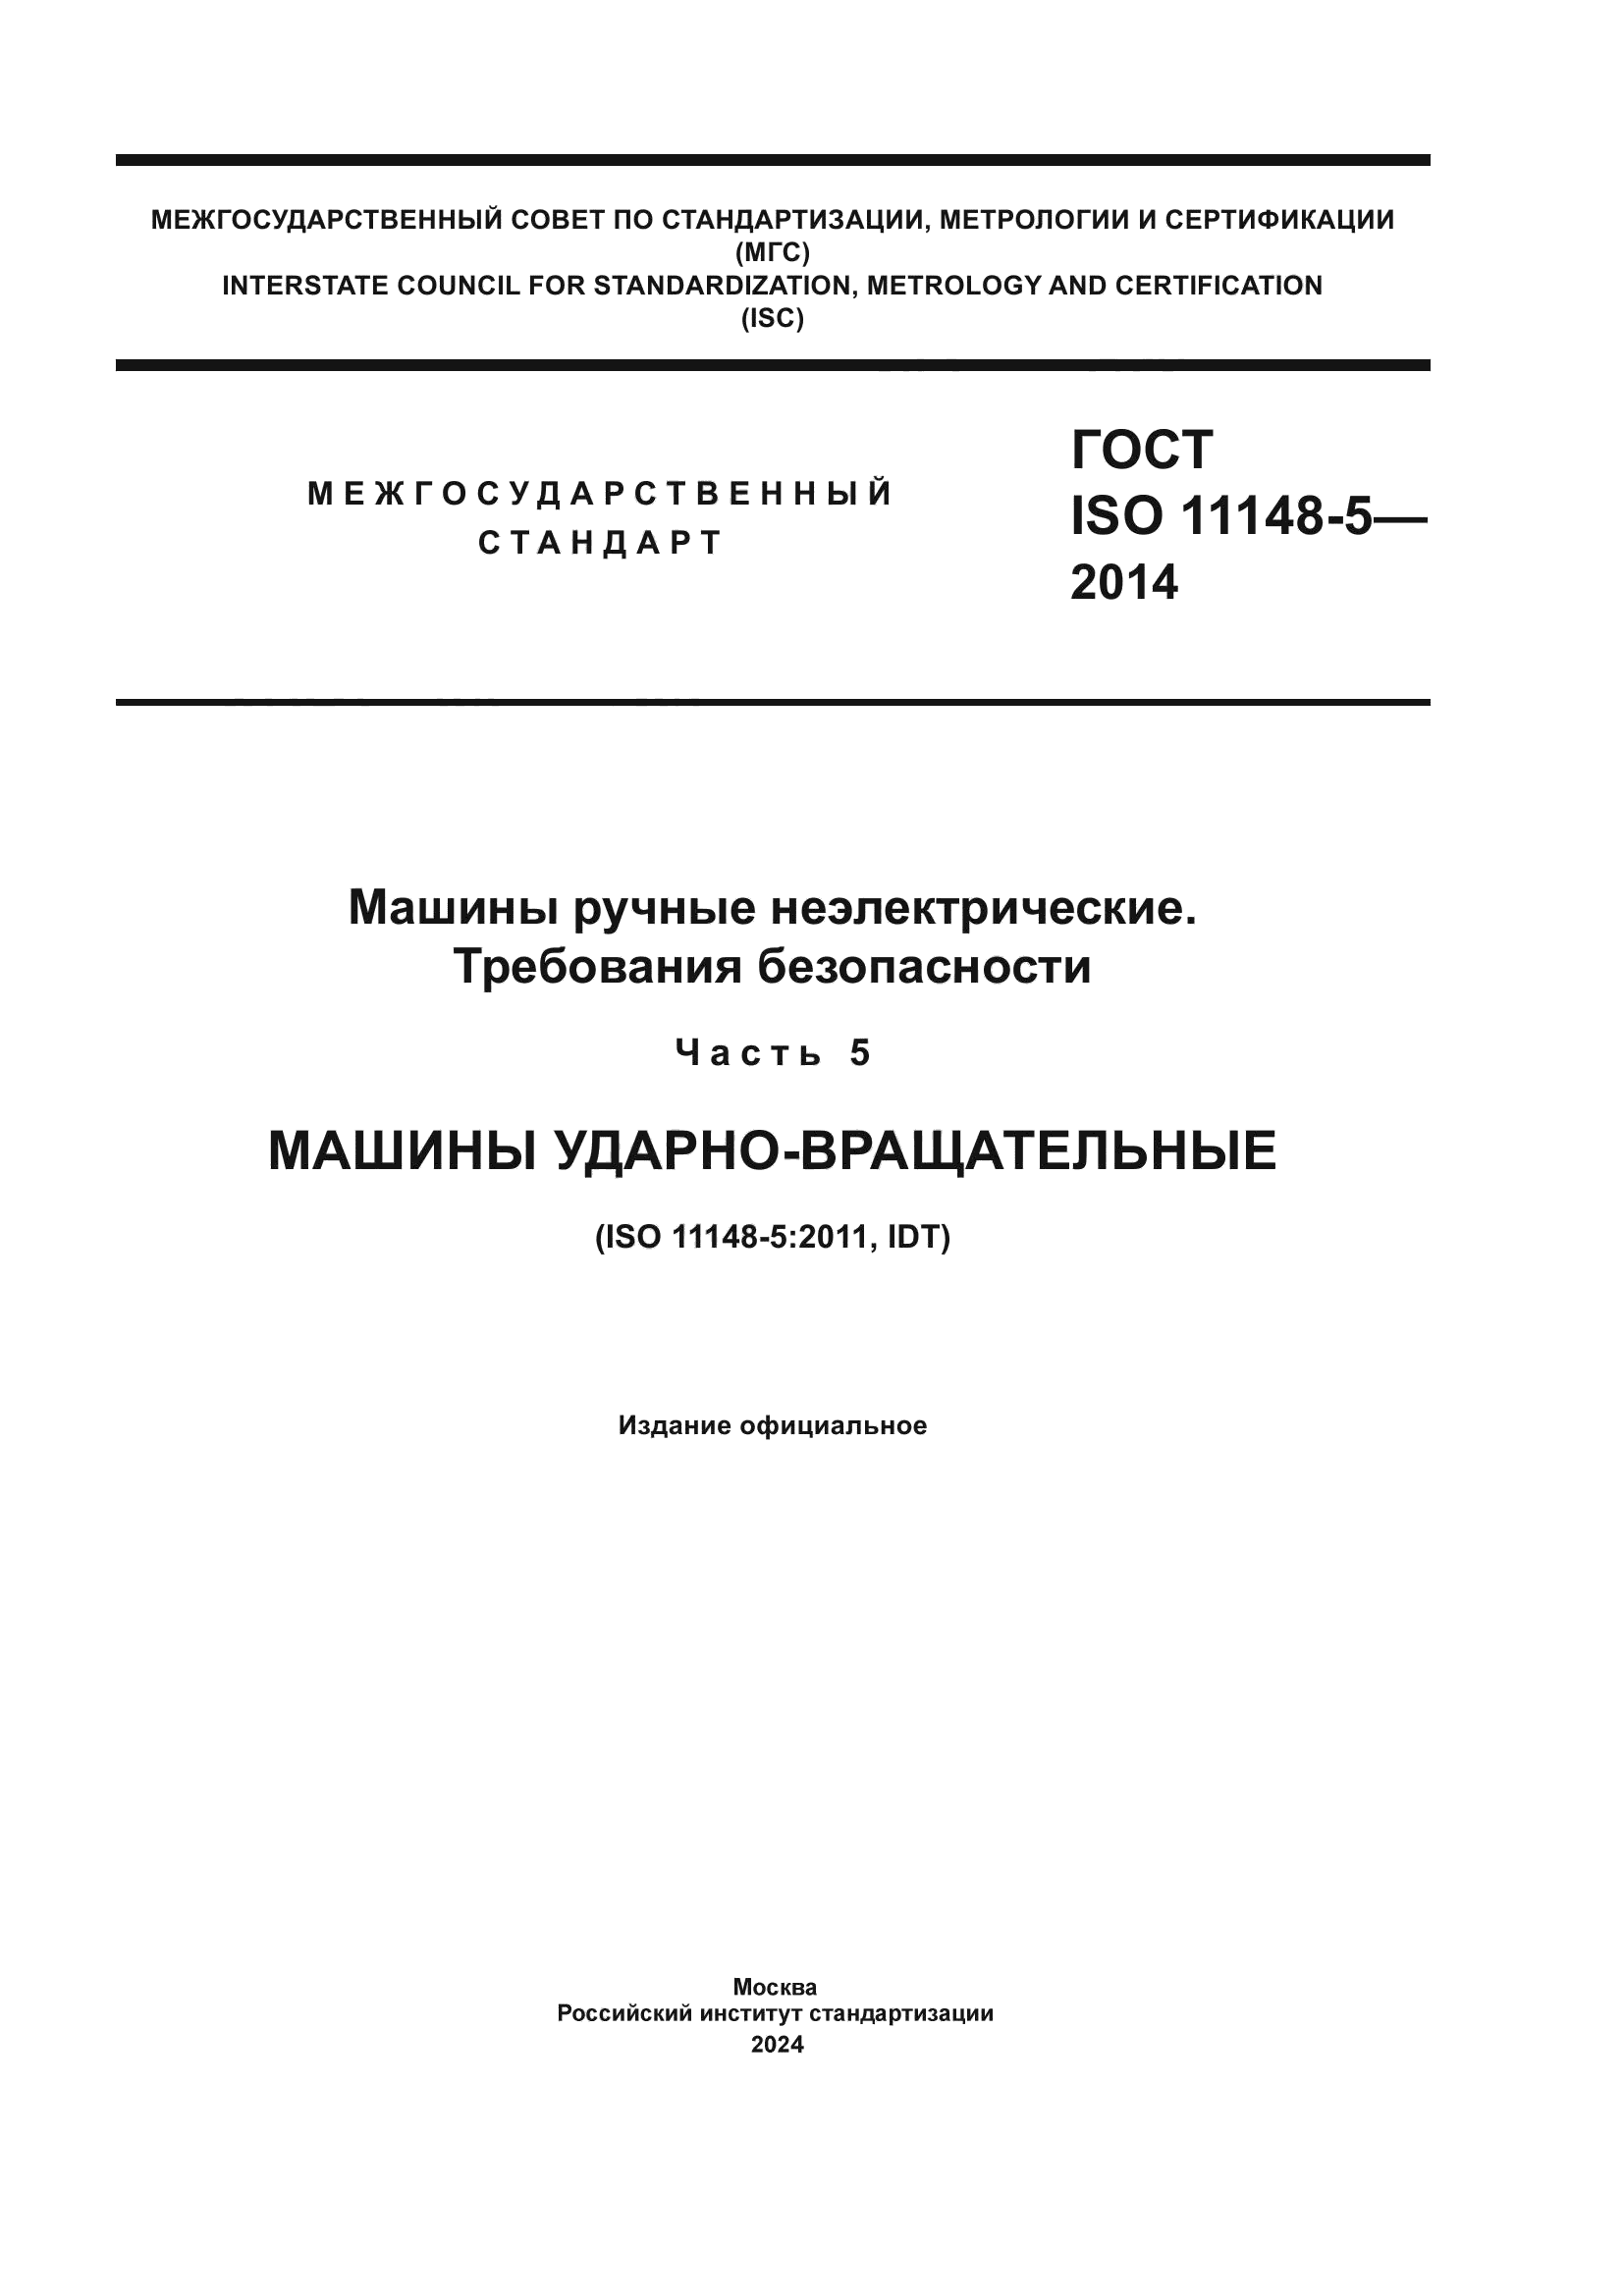 ГОСТ ISO 11148-5-2014